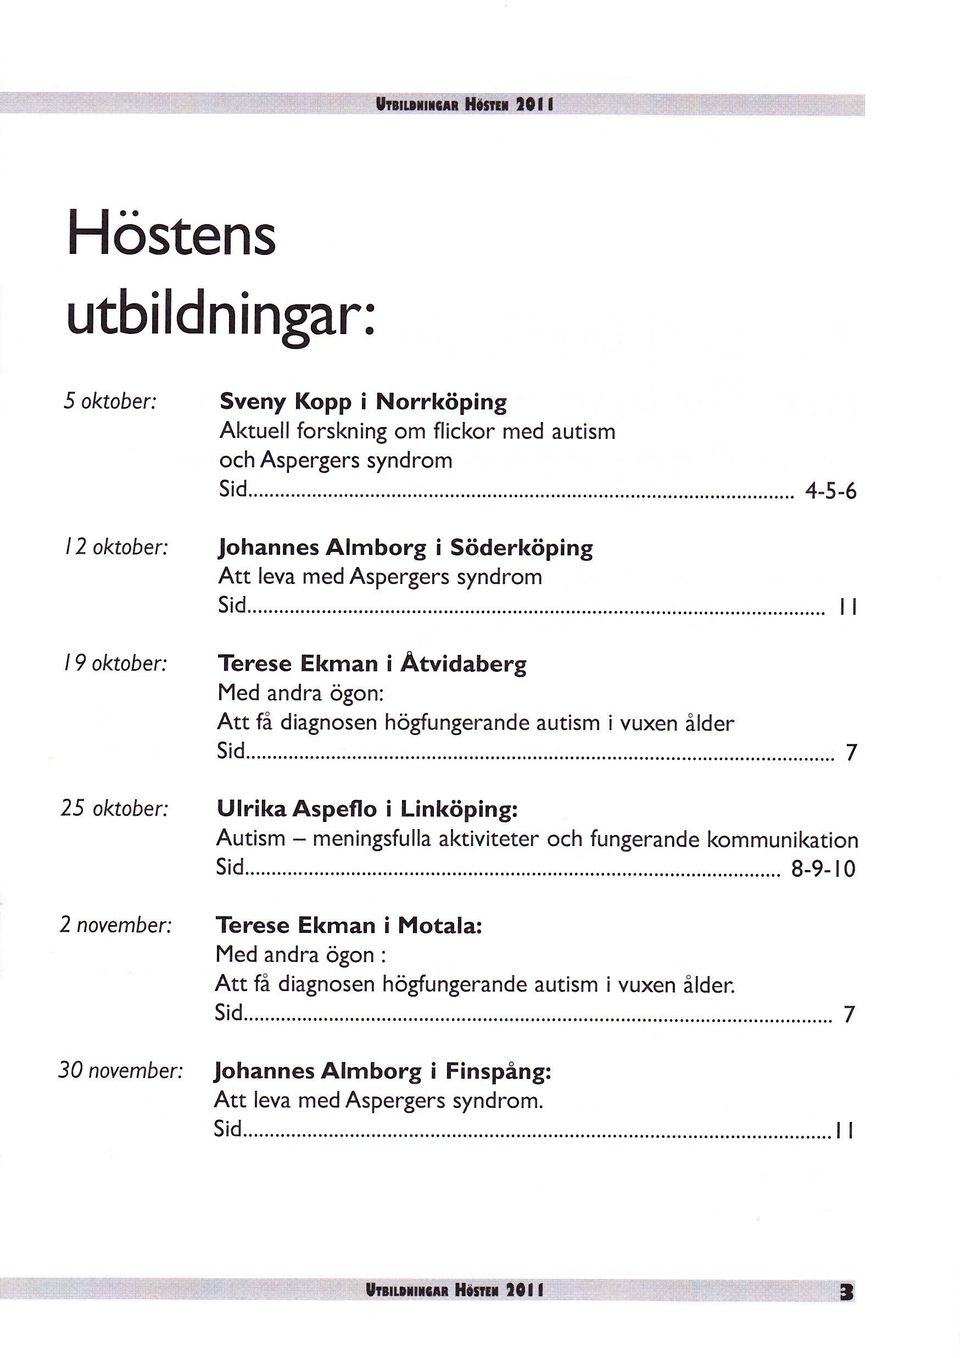 högfungerande autism i vuxen ålder sid...... 7 25 oktober: UlrikaAspeflo i Linköping: Autism - meningsfulla aktiviteter och fungerande kommunikation 8-9- t0 sid.